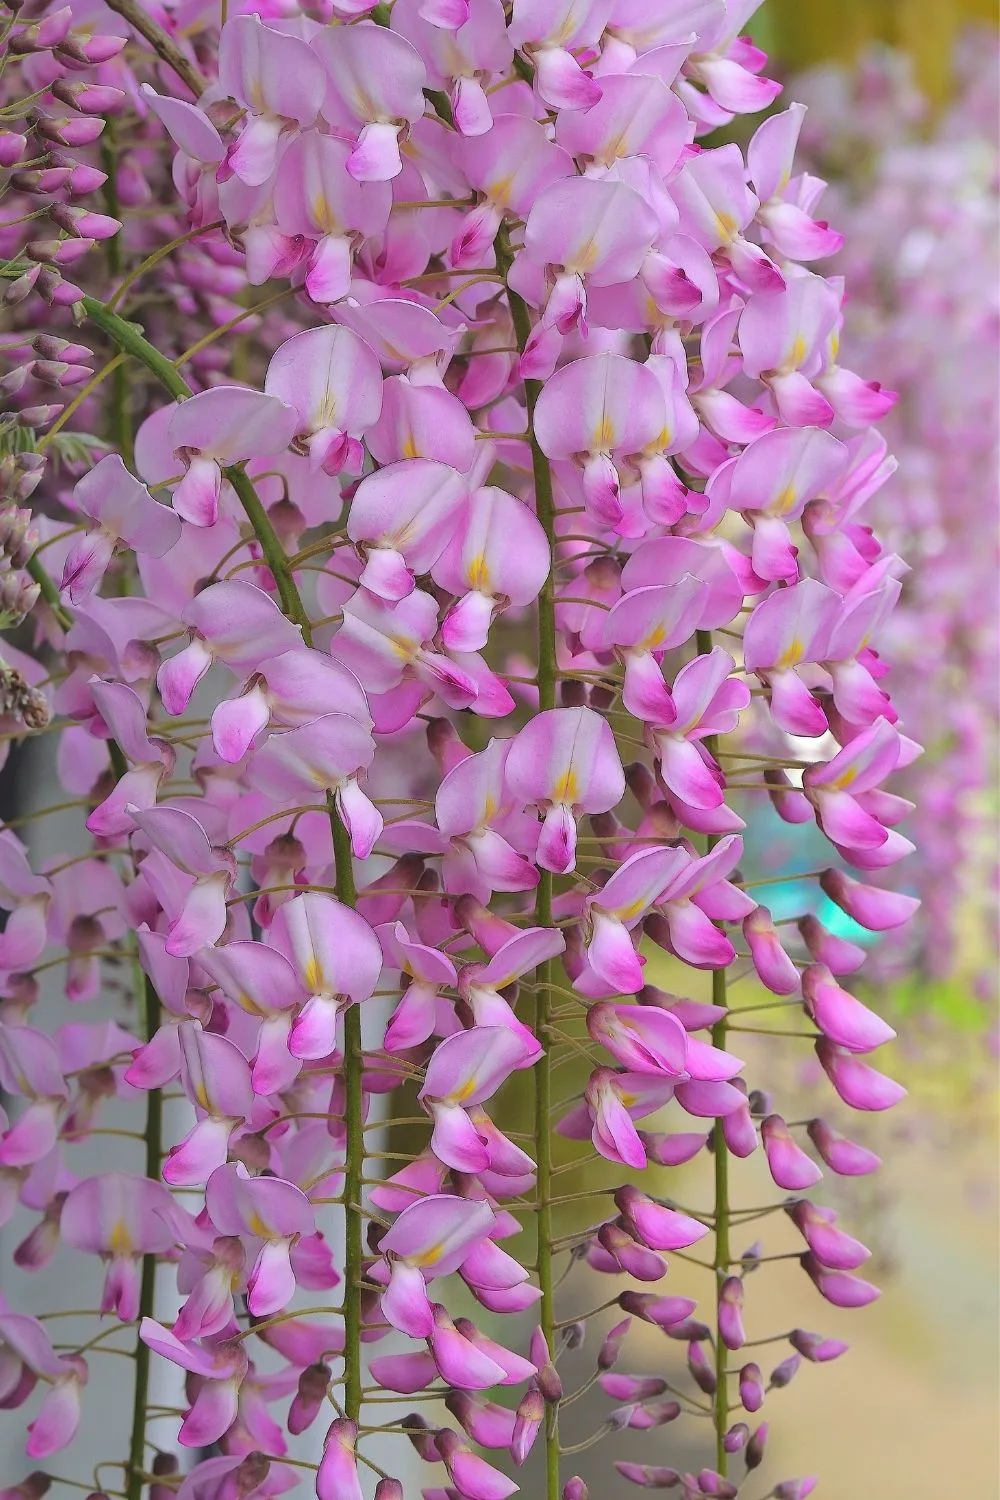 pink wisteria flowering clusters